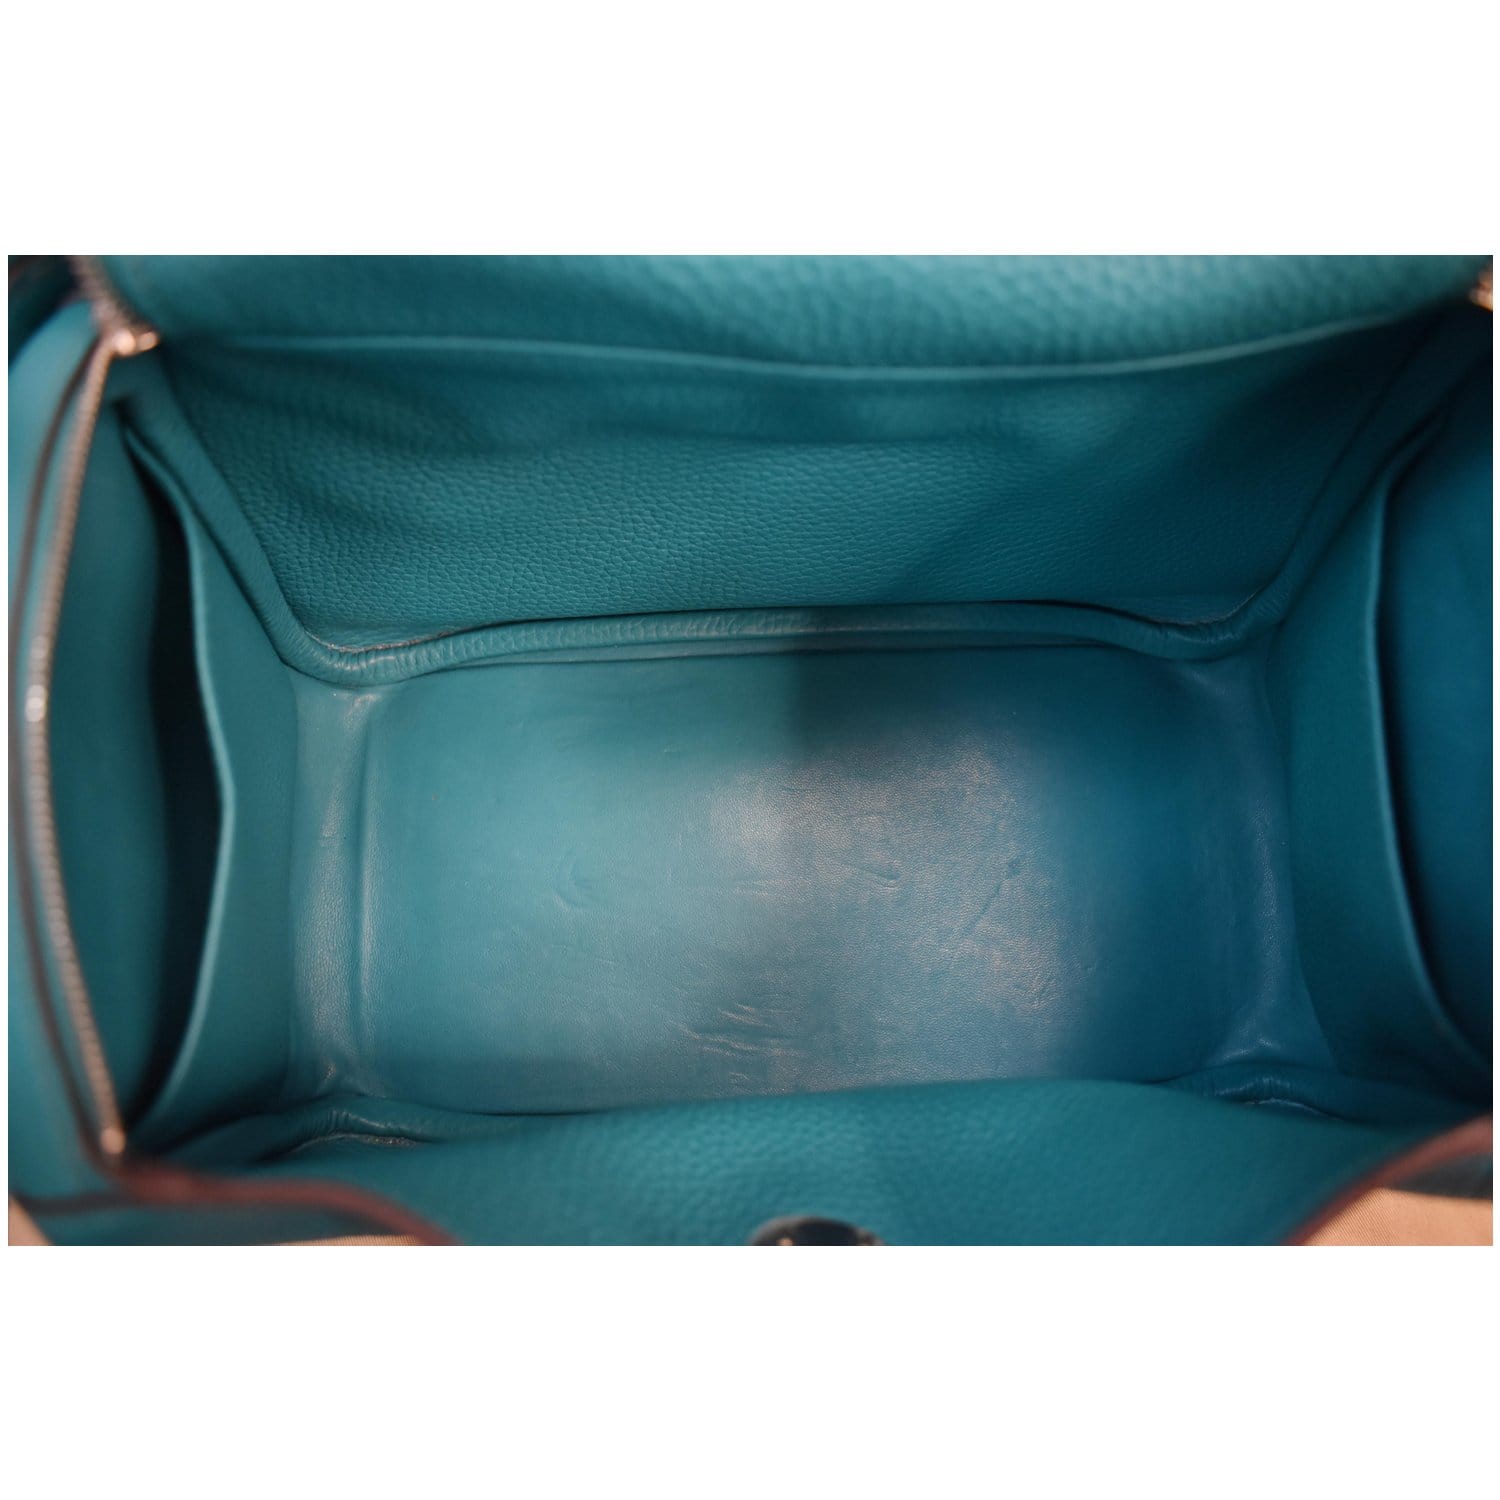 HERMÈS Mini Lindy shoulder bag in Bleu du Nord Clemence leather